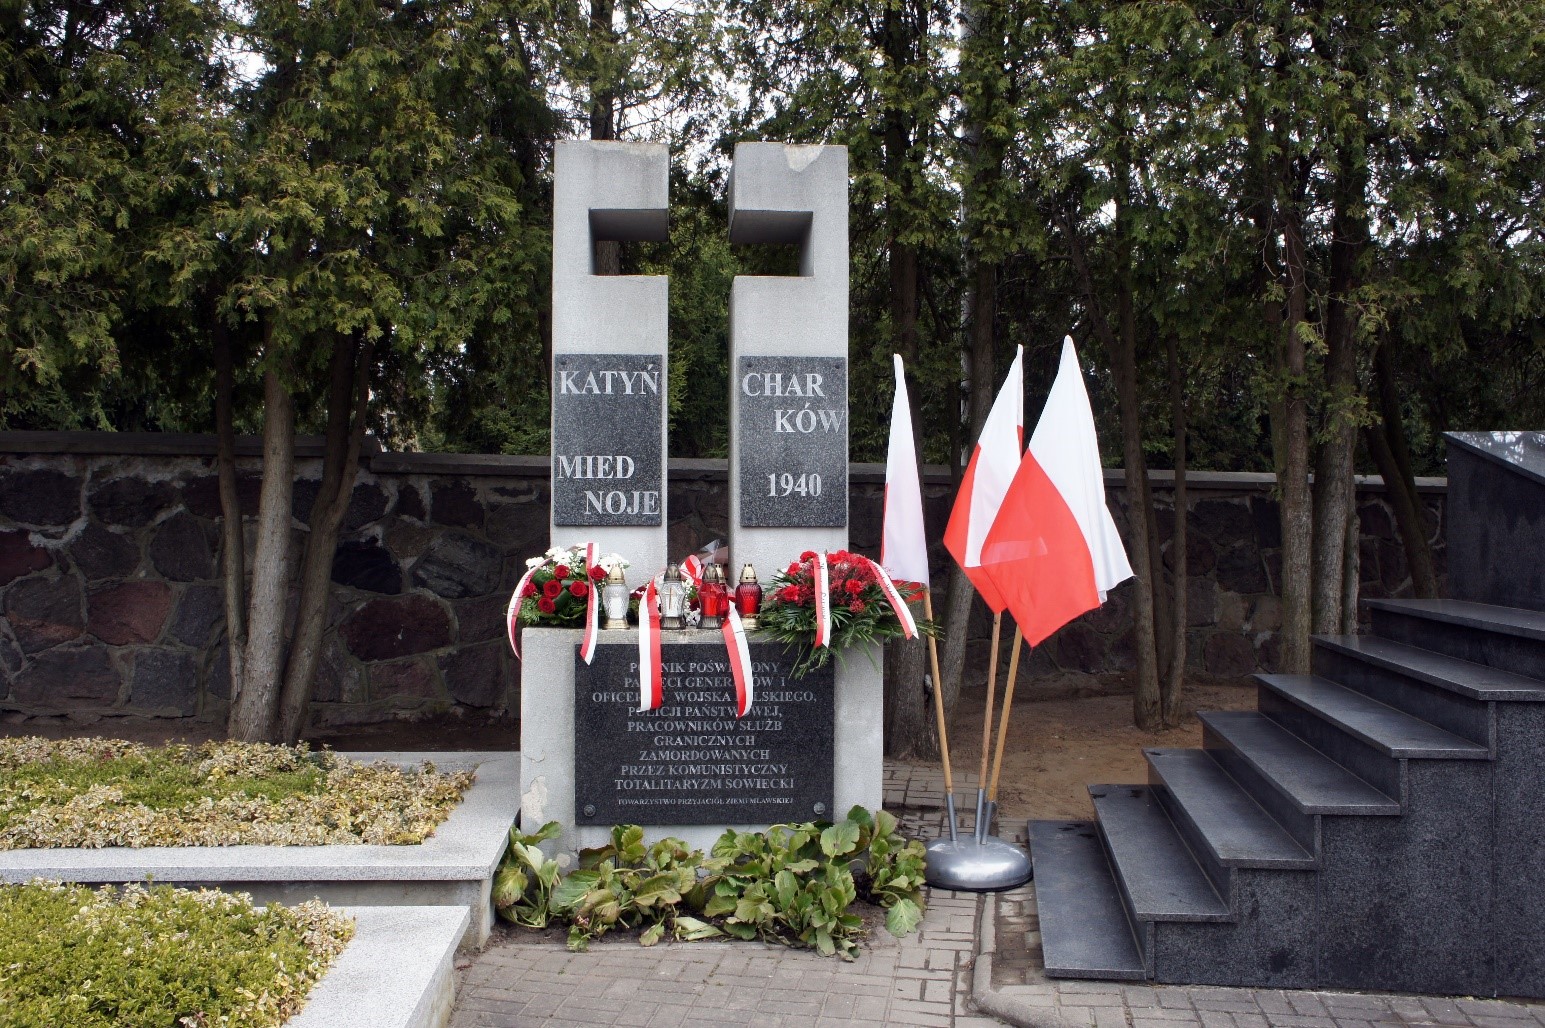 Burmistrz Miasta Mława zaprasza na obchody 81. rocznicy zbrodni katyńskiej